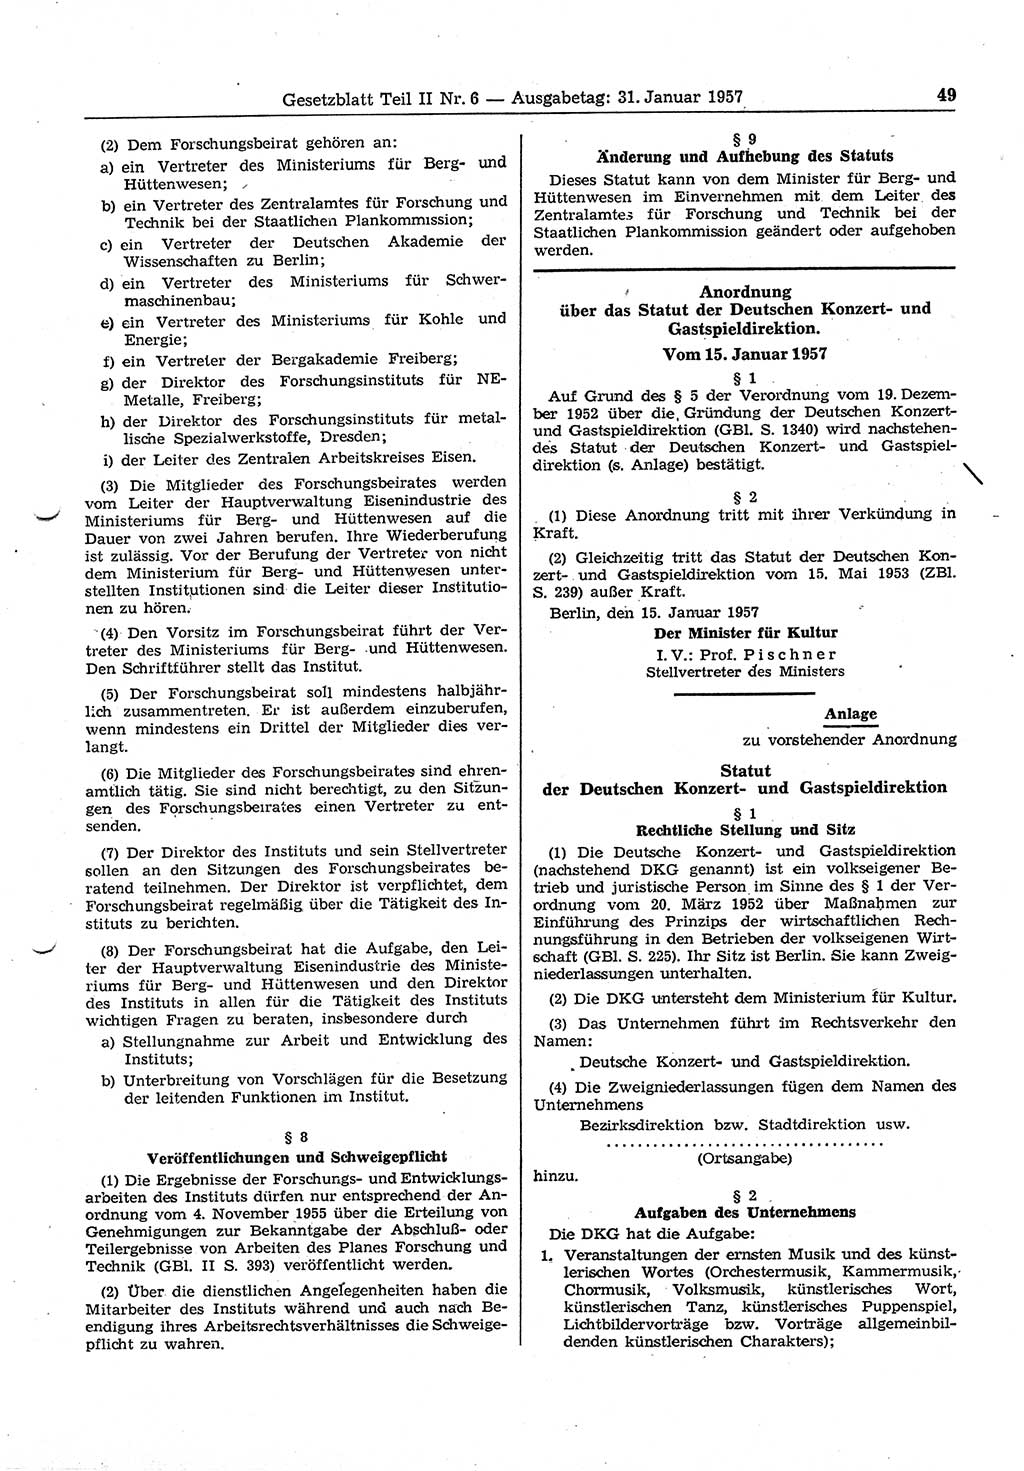 Gesetzblatt (GBl.) der Deutschen Demokratischen Republik (DDR) Teil ⅠⅠ 1957, Seite 49 (GBl. DDR ⅠⅠ 1957, S. 49)